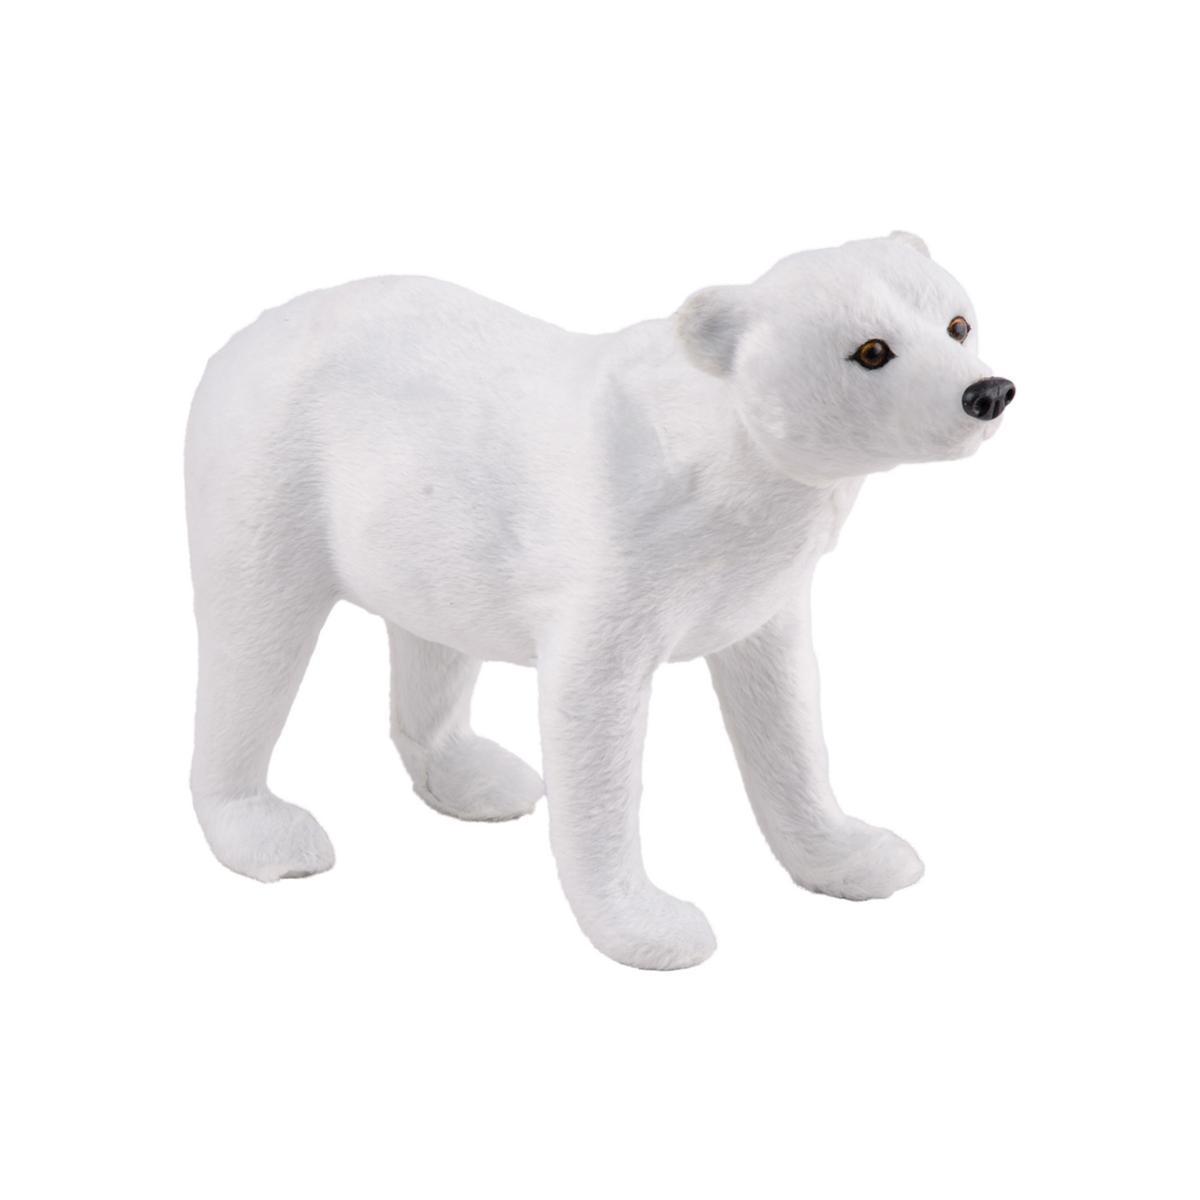 Ours polaire - Plastique et pelage - 25 x 8 x H 19 cm - Blanc